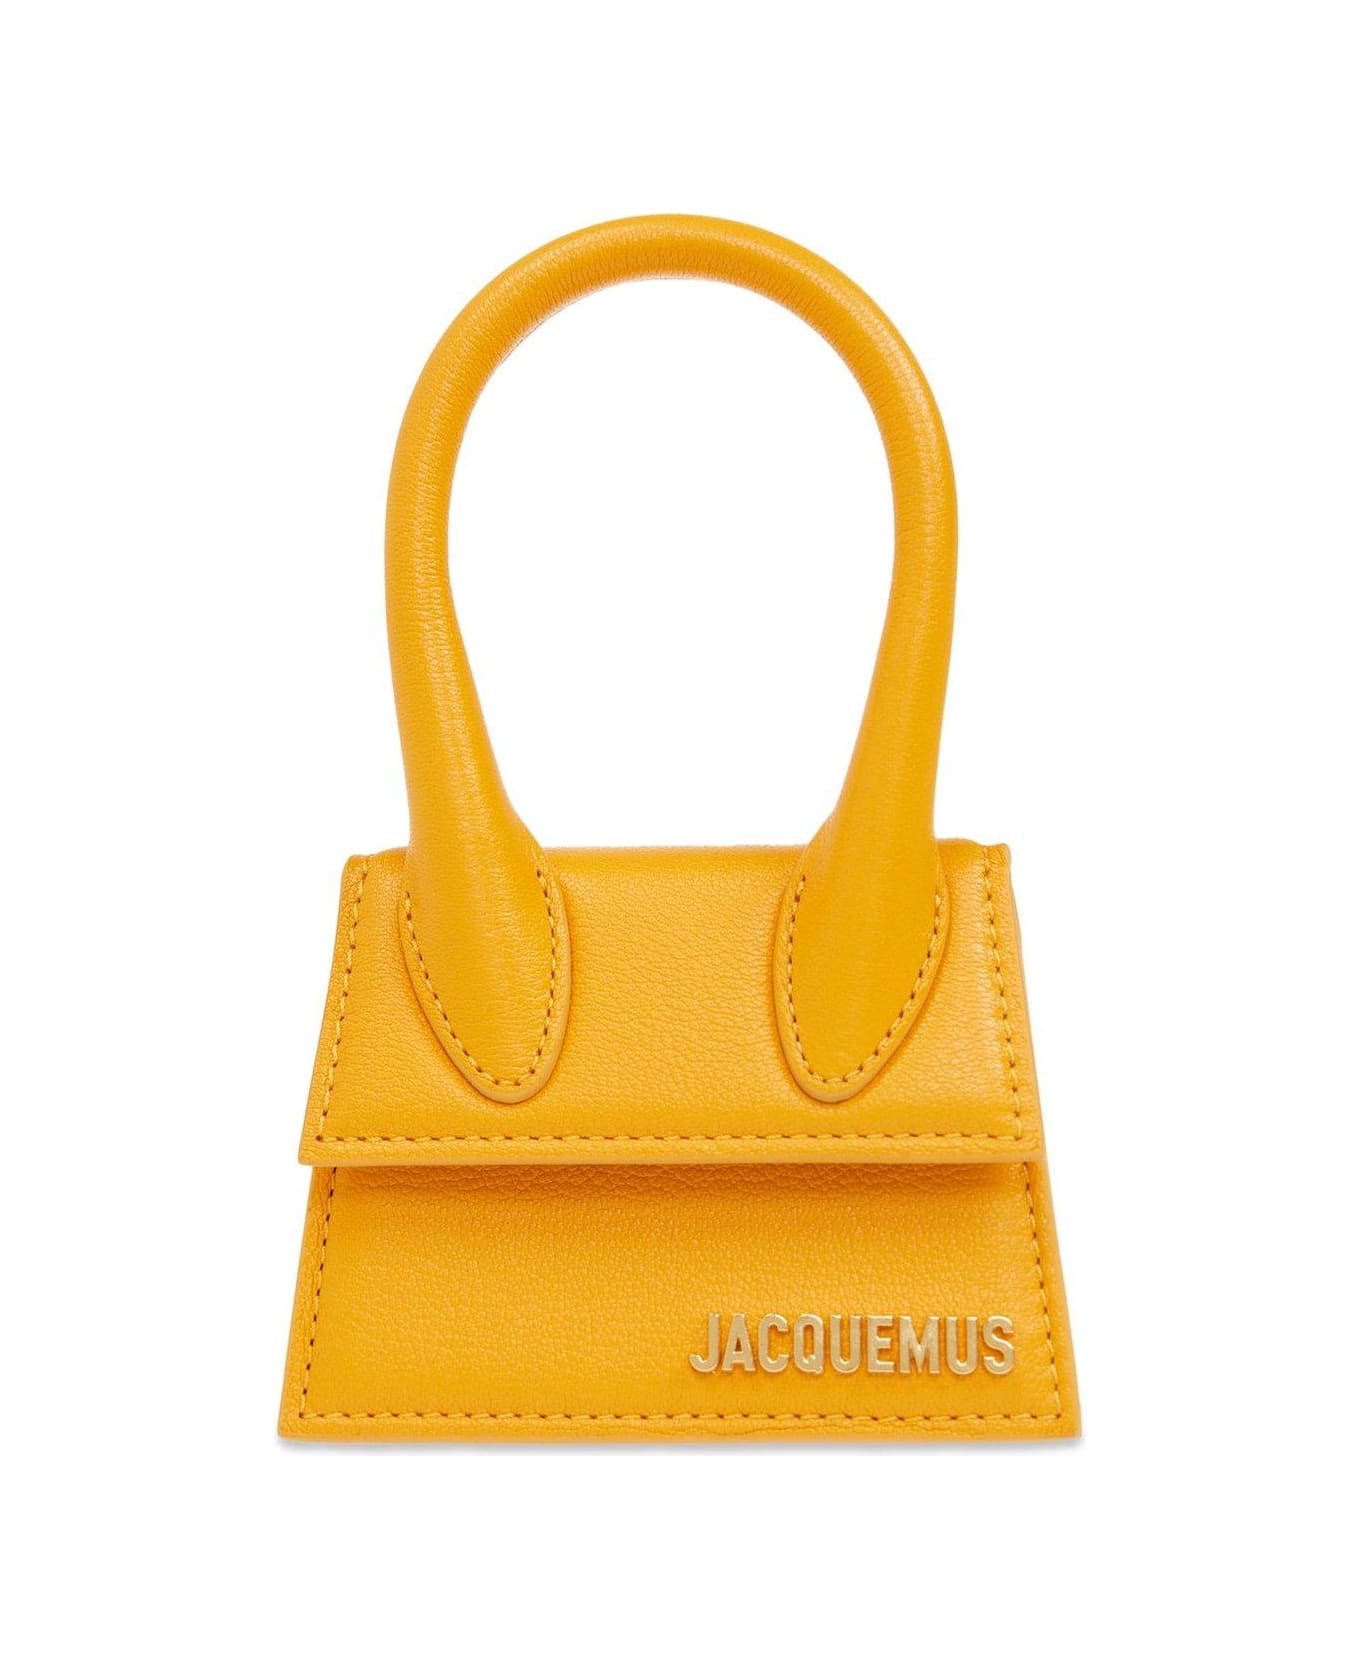 Jacquemus Le Chiquito Signature Mini Handbag - ORANGE